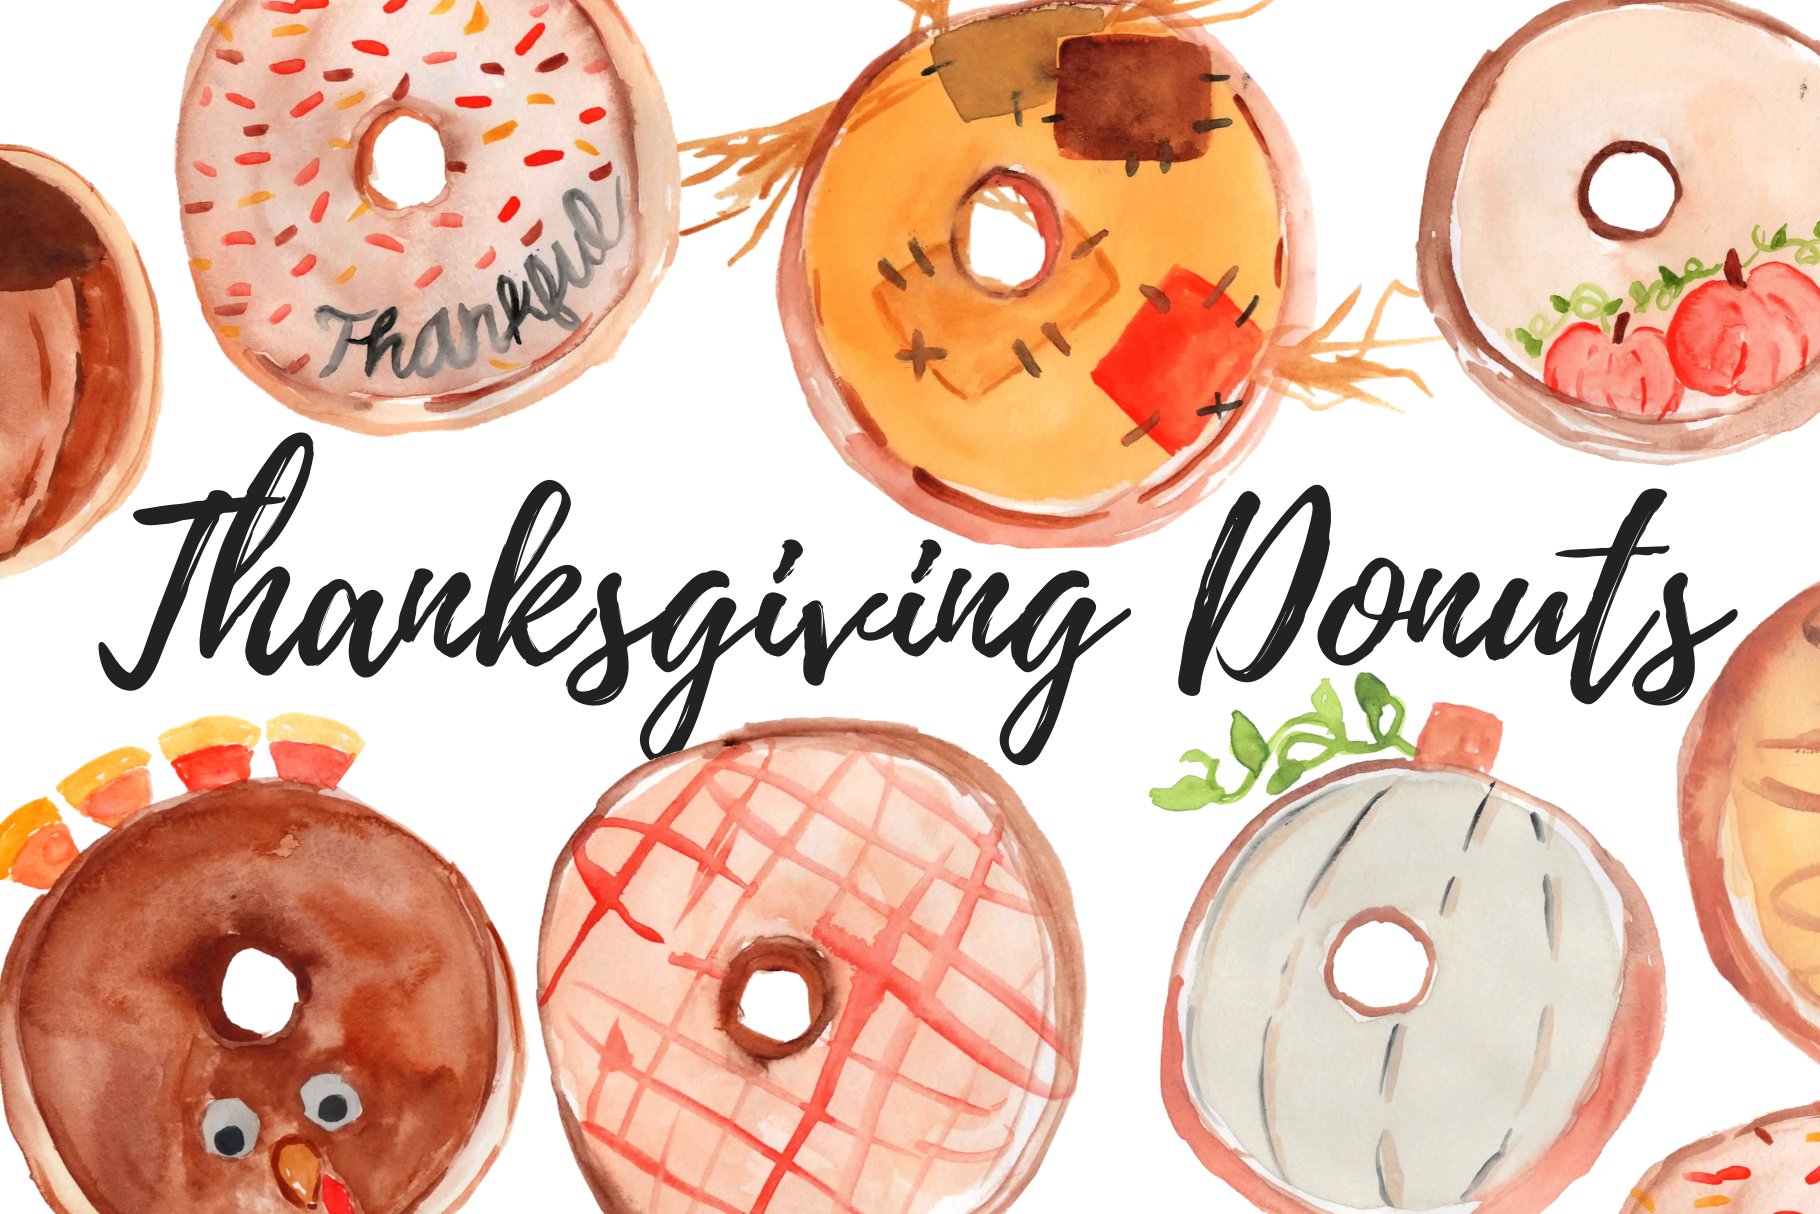 Tasty thanksgiving donuts illustrations.